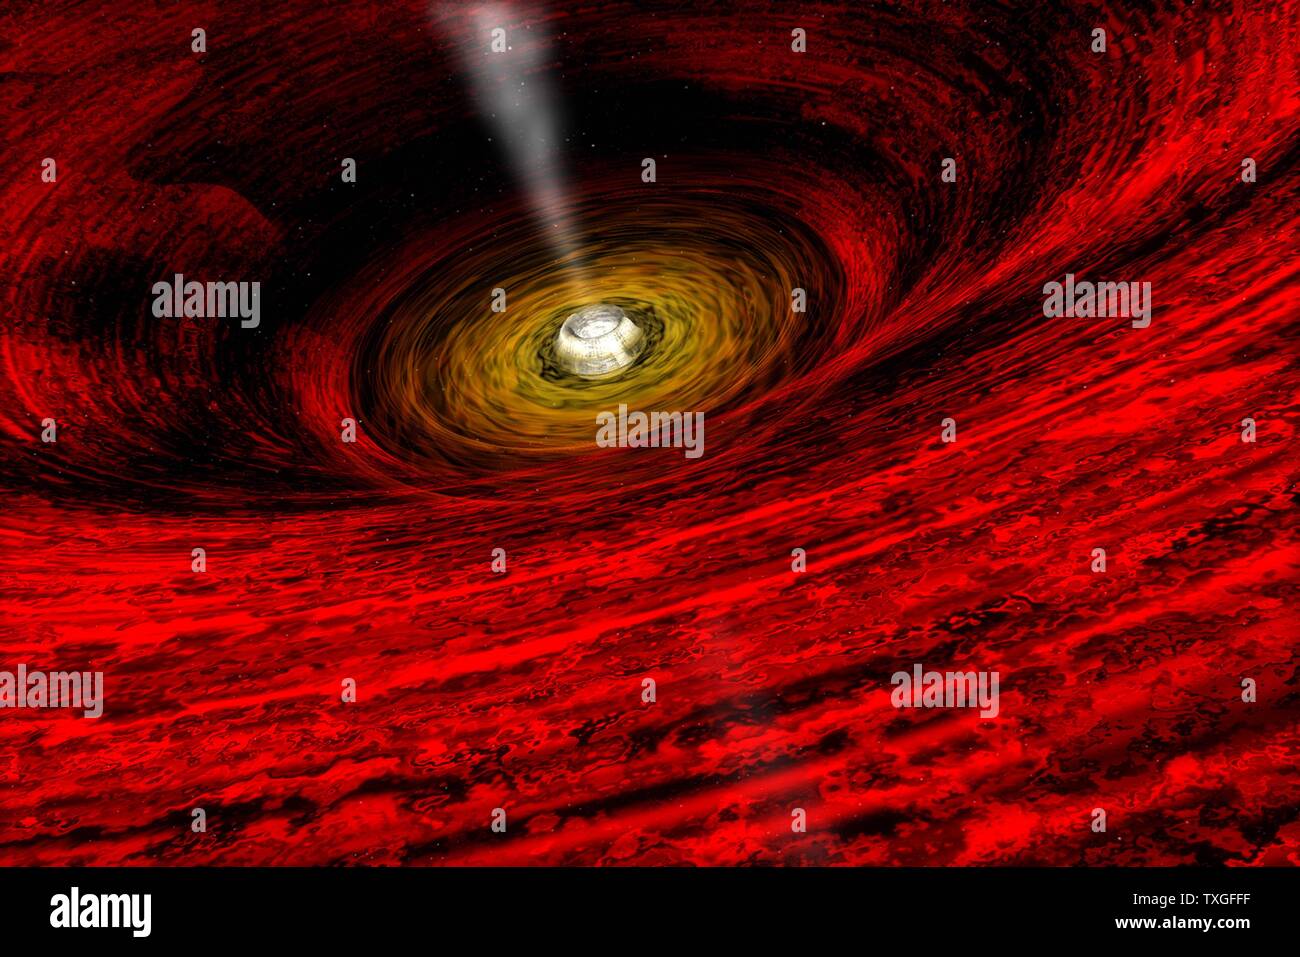 La vista in prossimità di un buco nero, disegnato da aprile Hobart, CXC: al centro di una vasca idromassaggio di vorticazione del gas caldo è un buco nero. Studi della luce emessa dal gas di vorticazione spesso indica non solo che un buco nero è presente, ma è probabile che anche gli attributi. Foto Stock